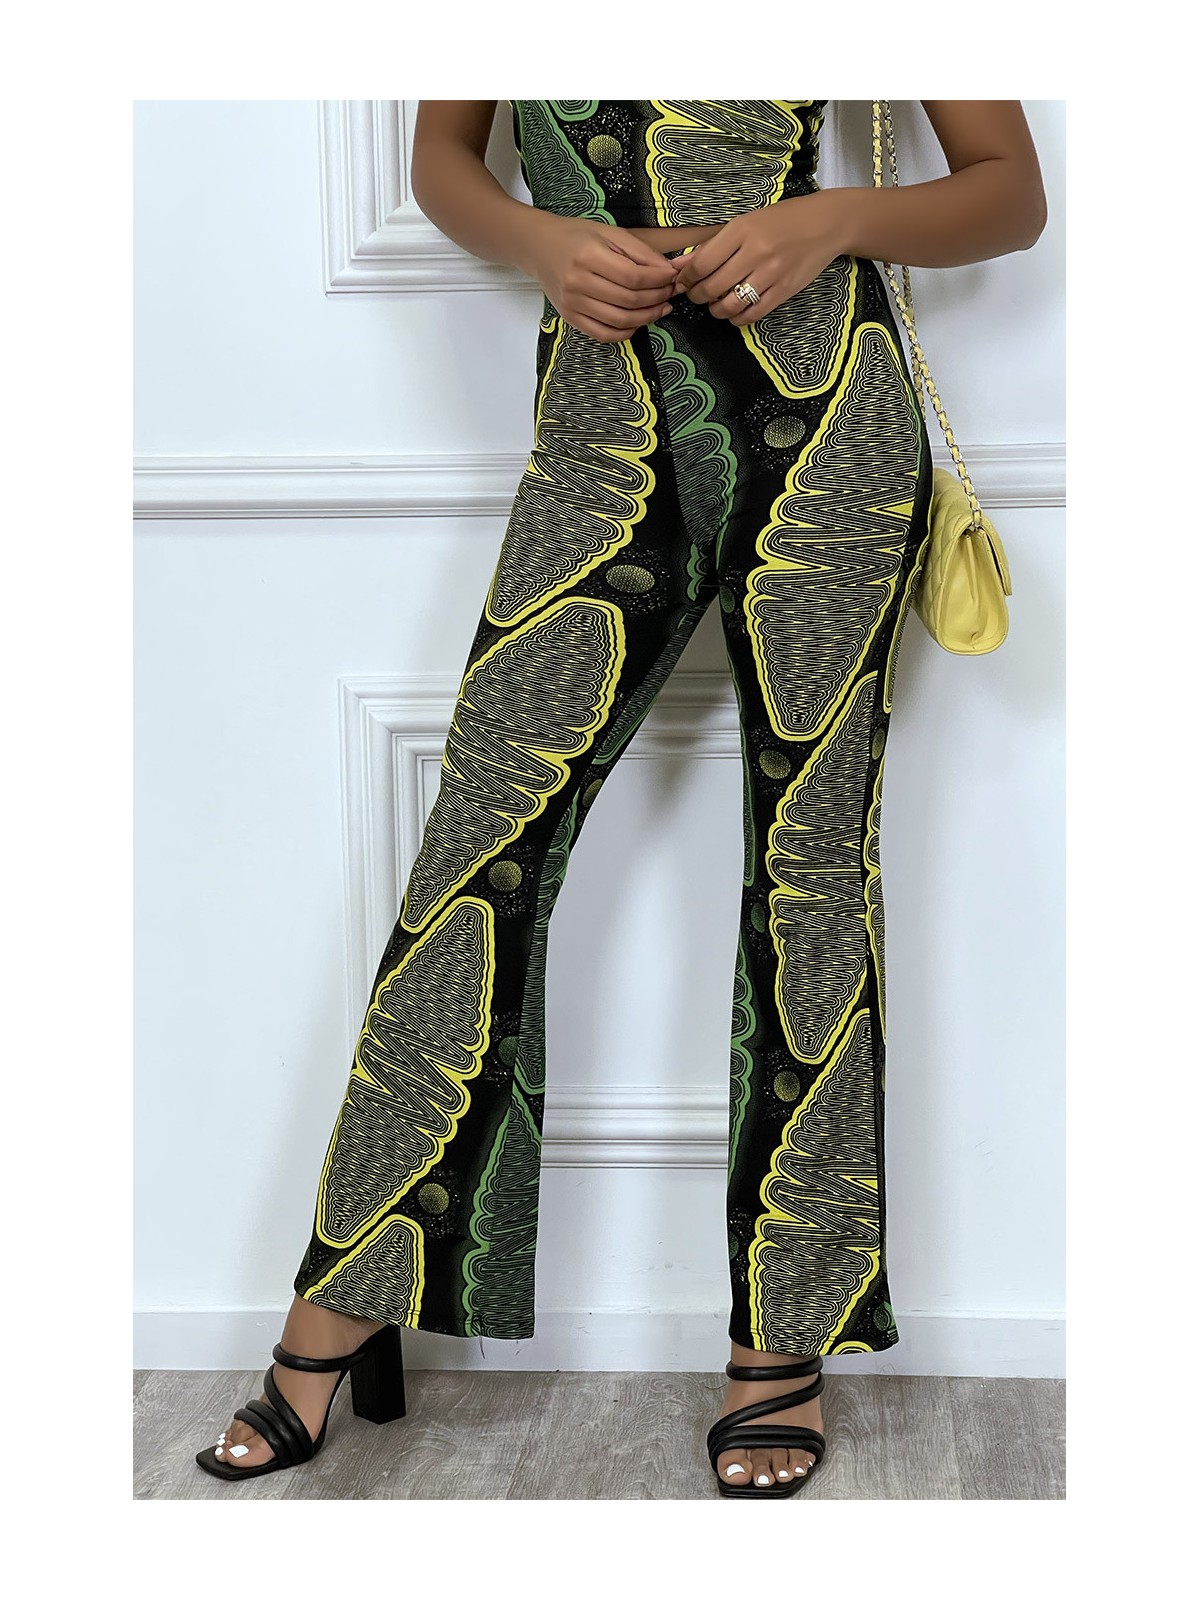 Pantalon noir evasée à imprimé wax jaune et vert - 1